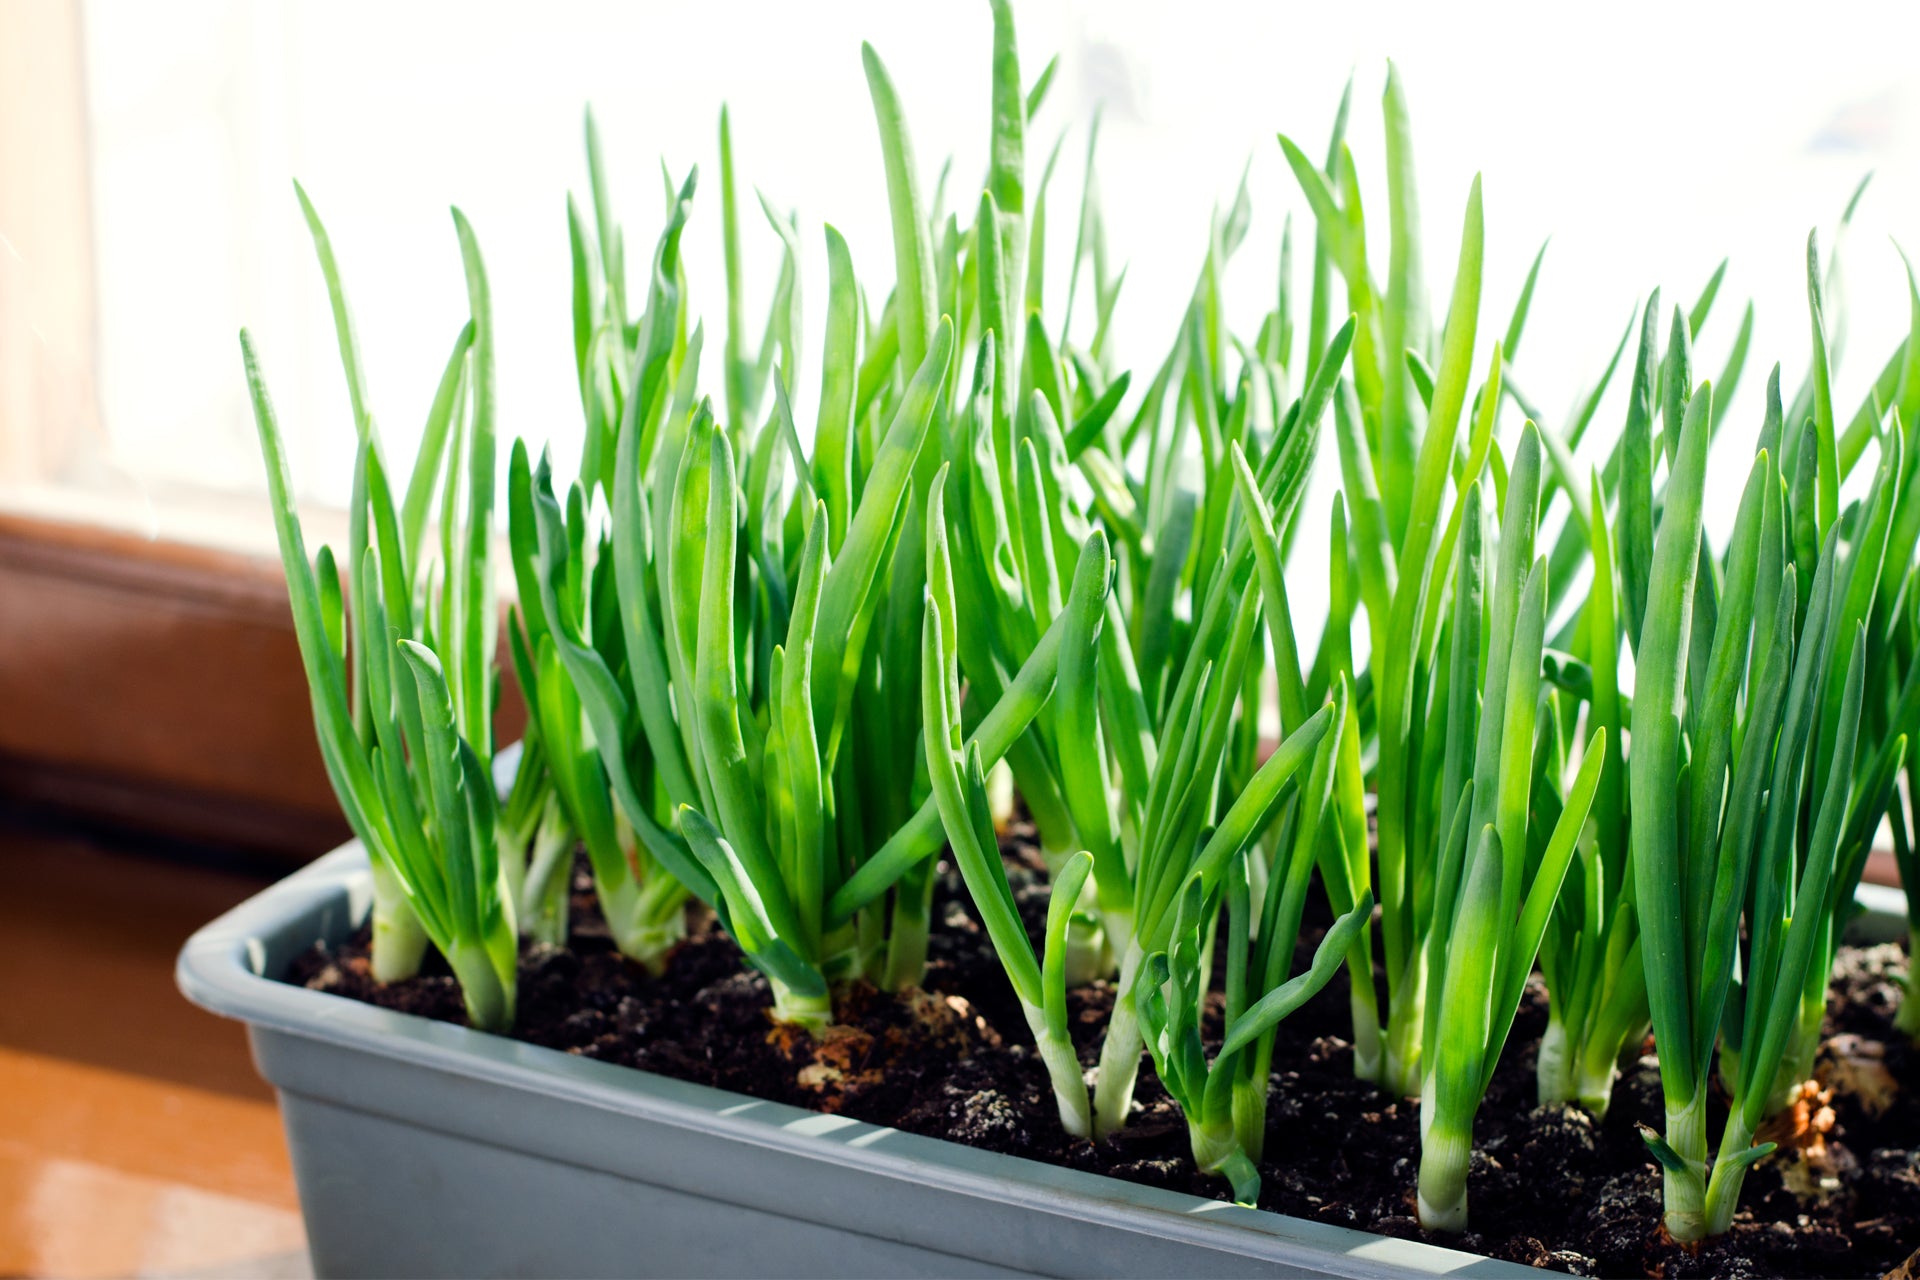 White Onion Sets Naturally Grown | White Ebenezer Onion Bulbs 8 oz - FREE SHIPPING